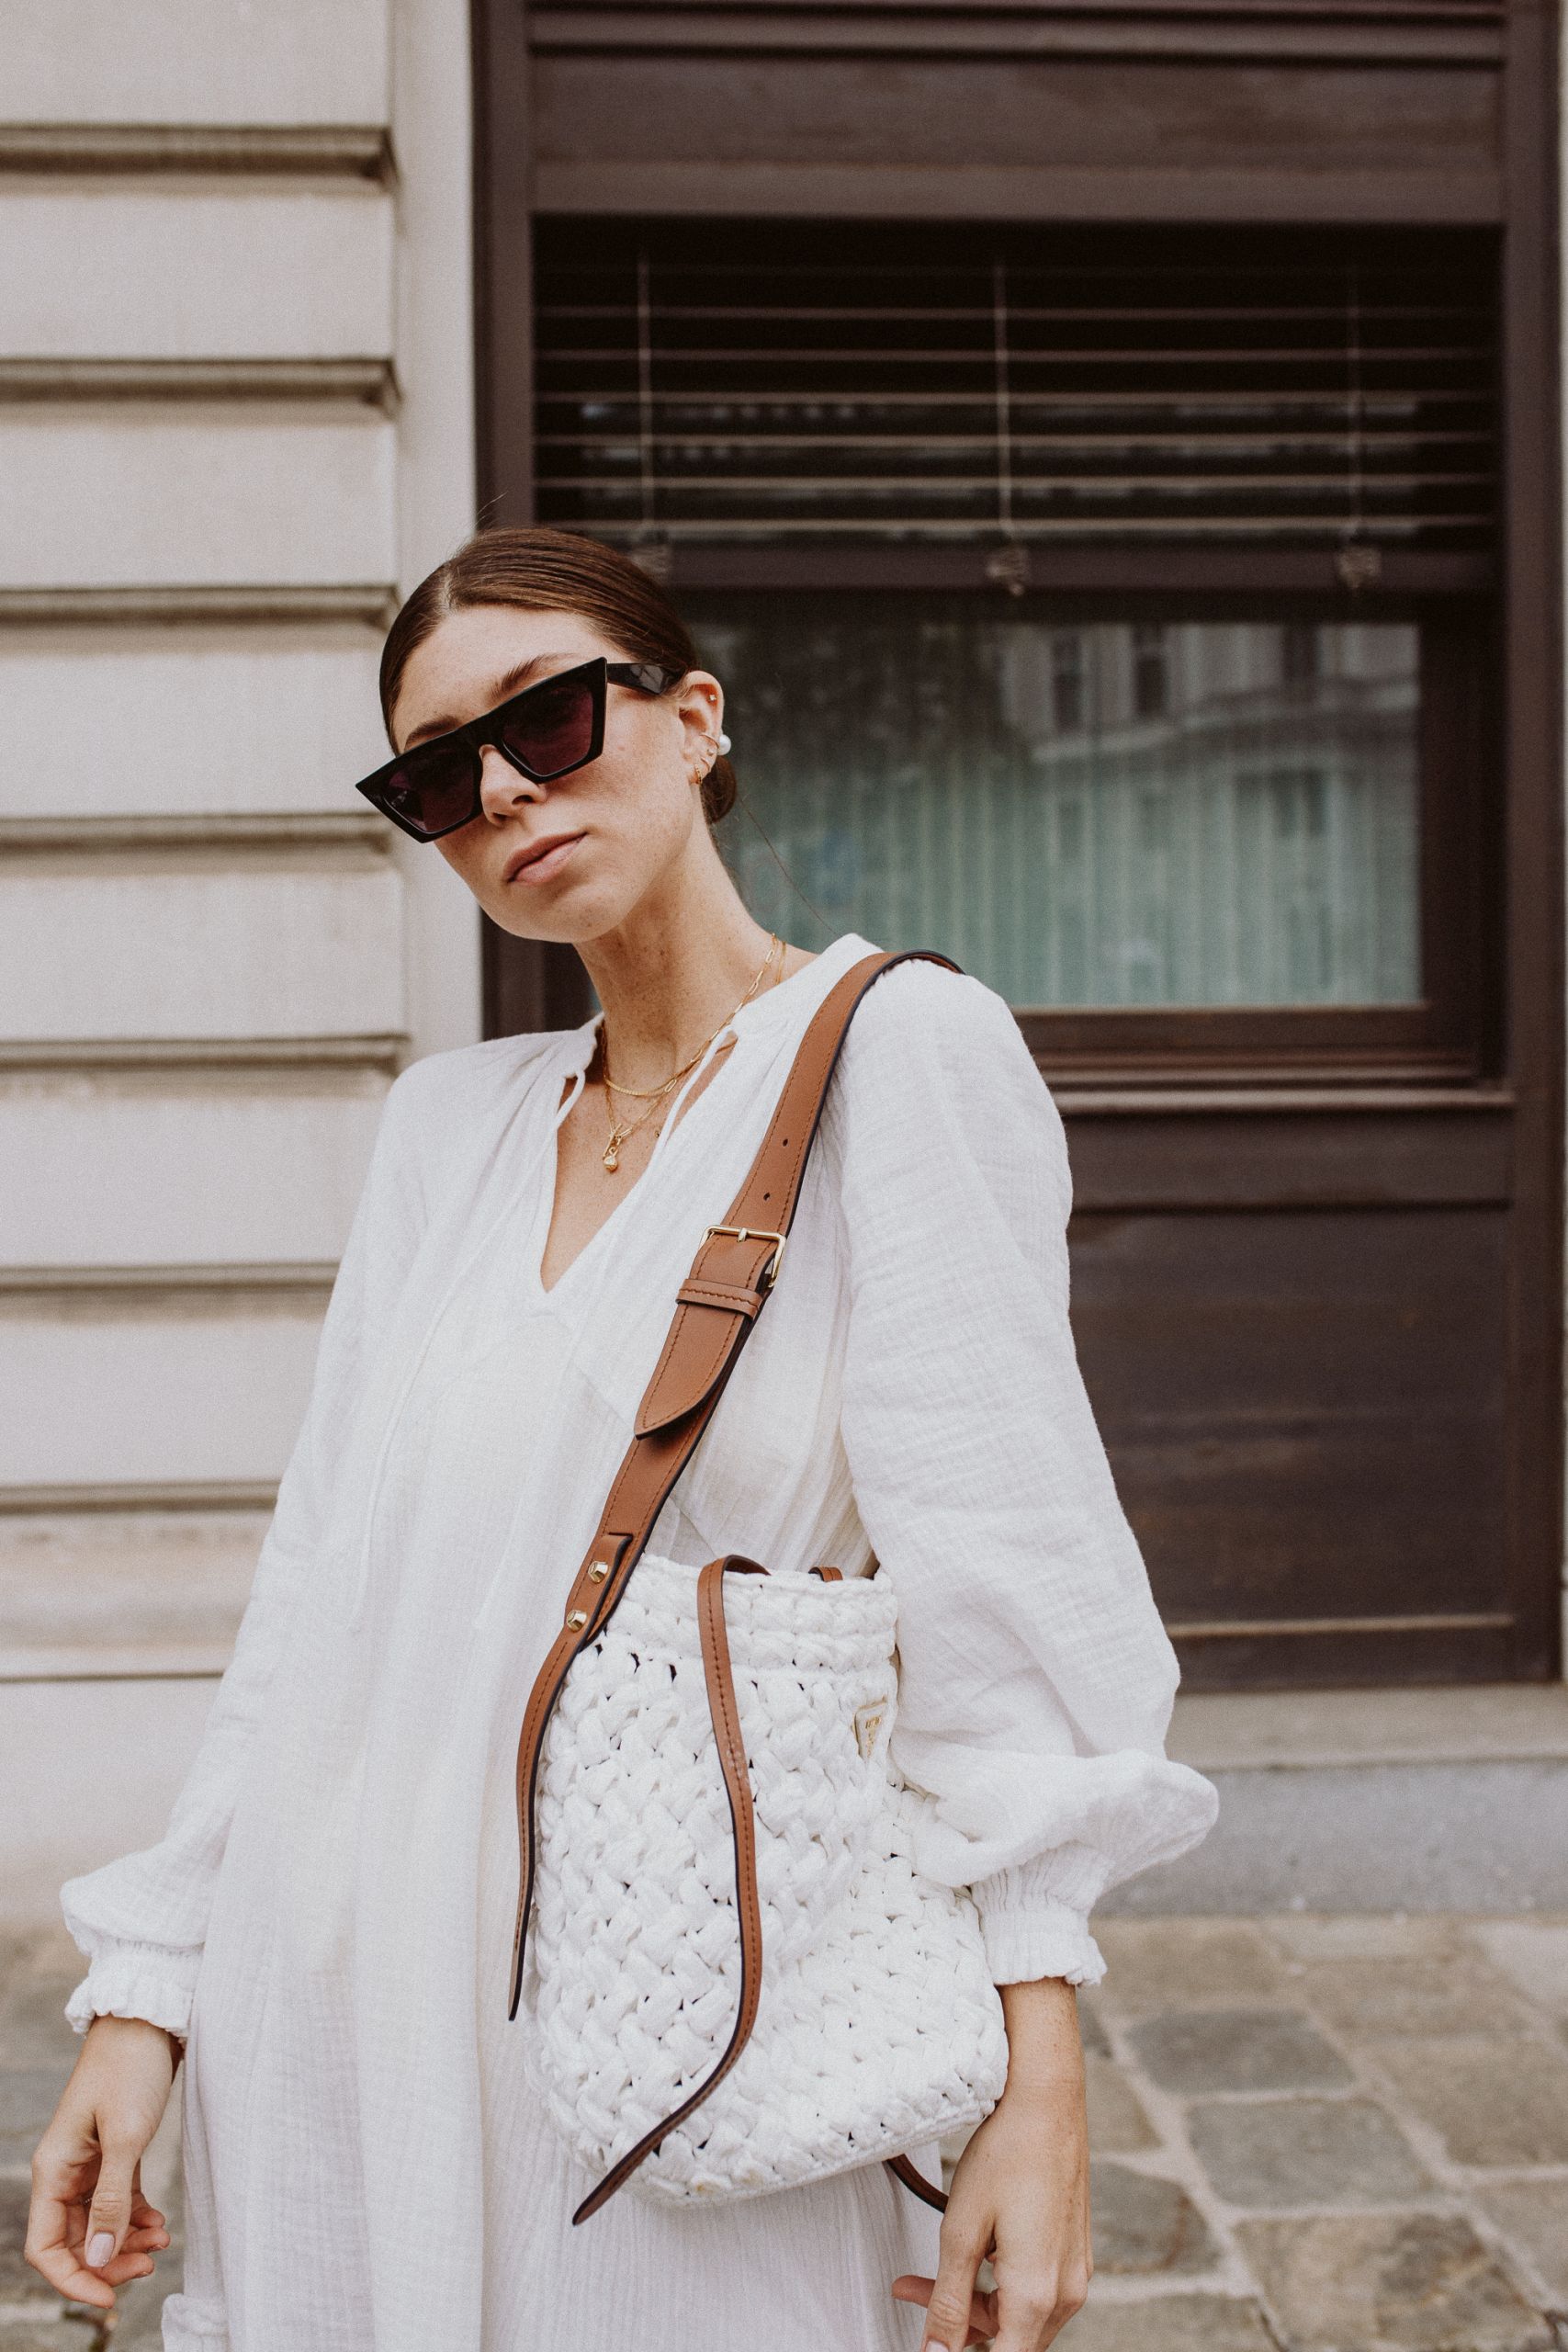 Die schönsten Sommerkleider in Weiß: Maxikleider und Kaftans - Love Daily Dose